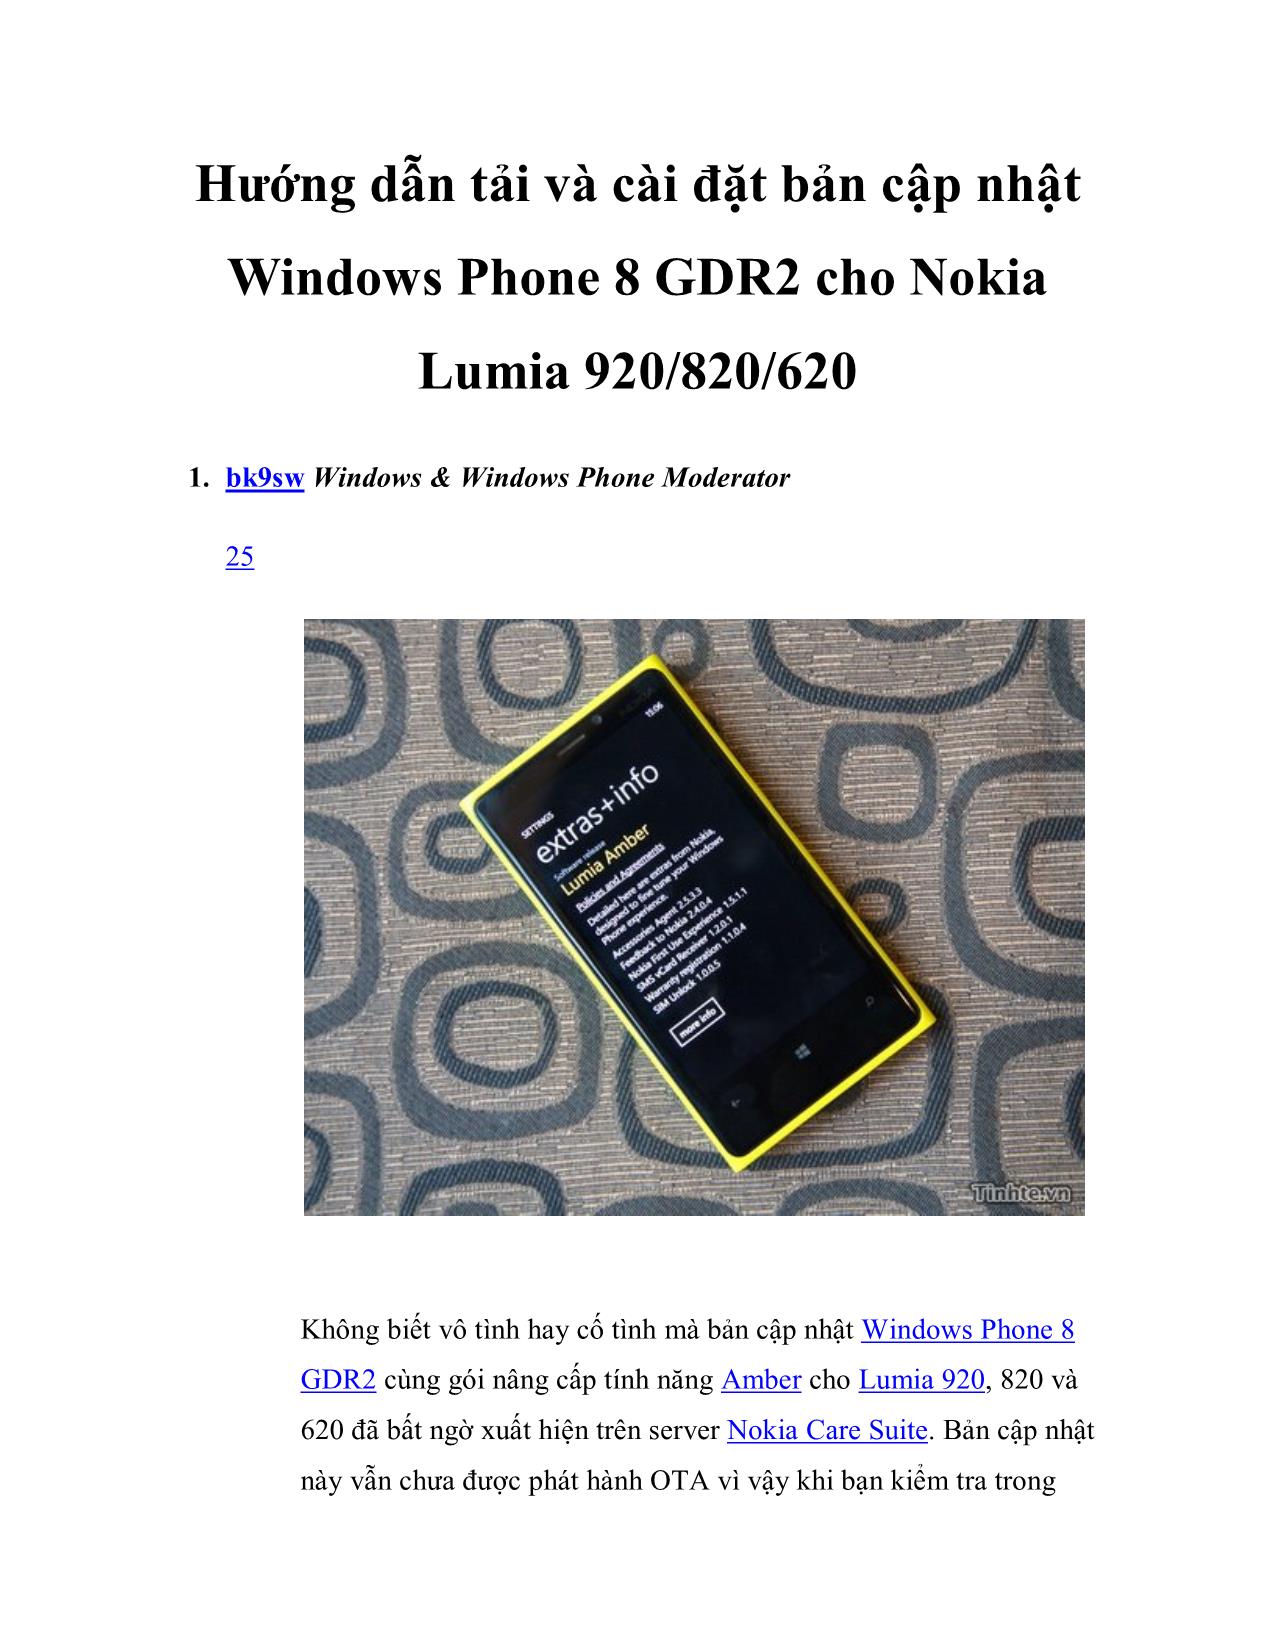 Hướng dẫn tải và cài đặt bản cập nhật Windows Phone 8 GDR2 cho Nokia Lumia 920/820/620 trang 1